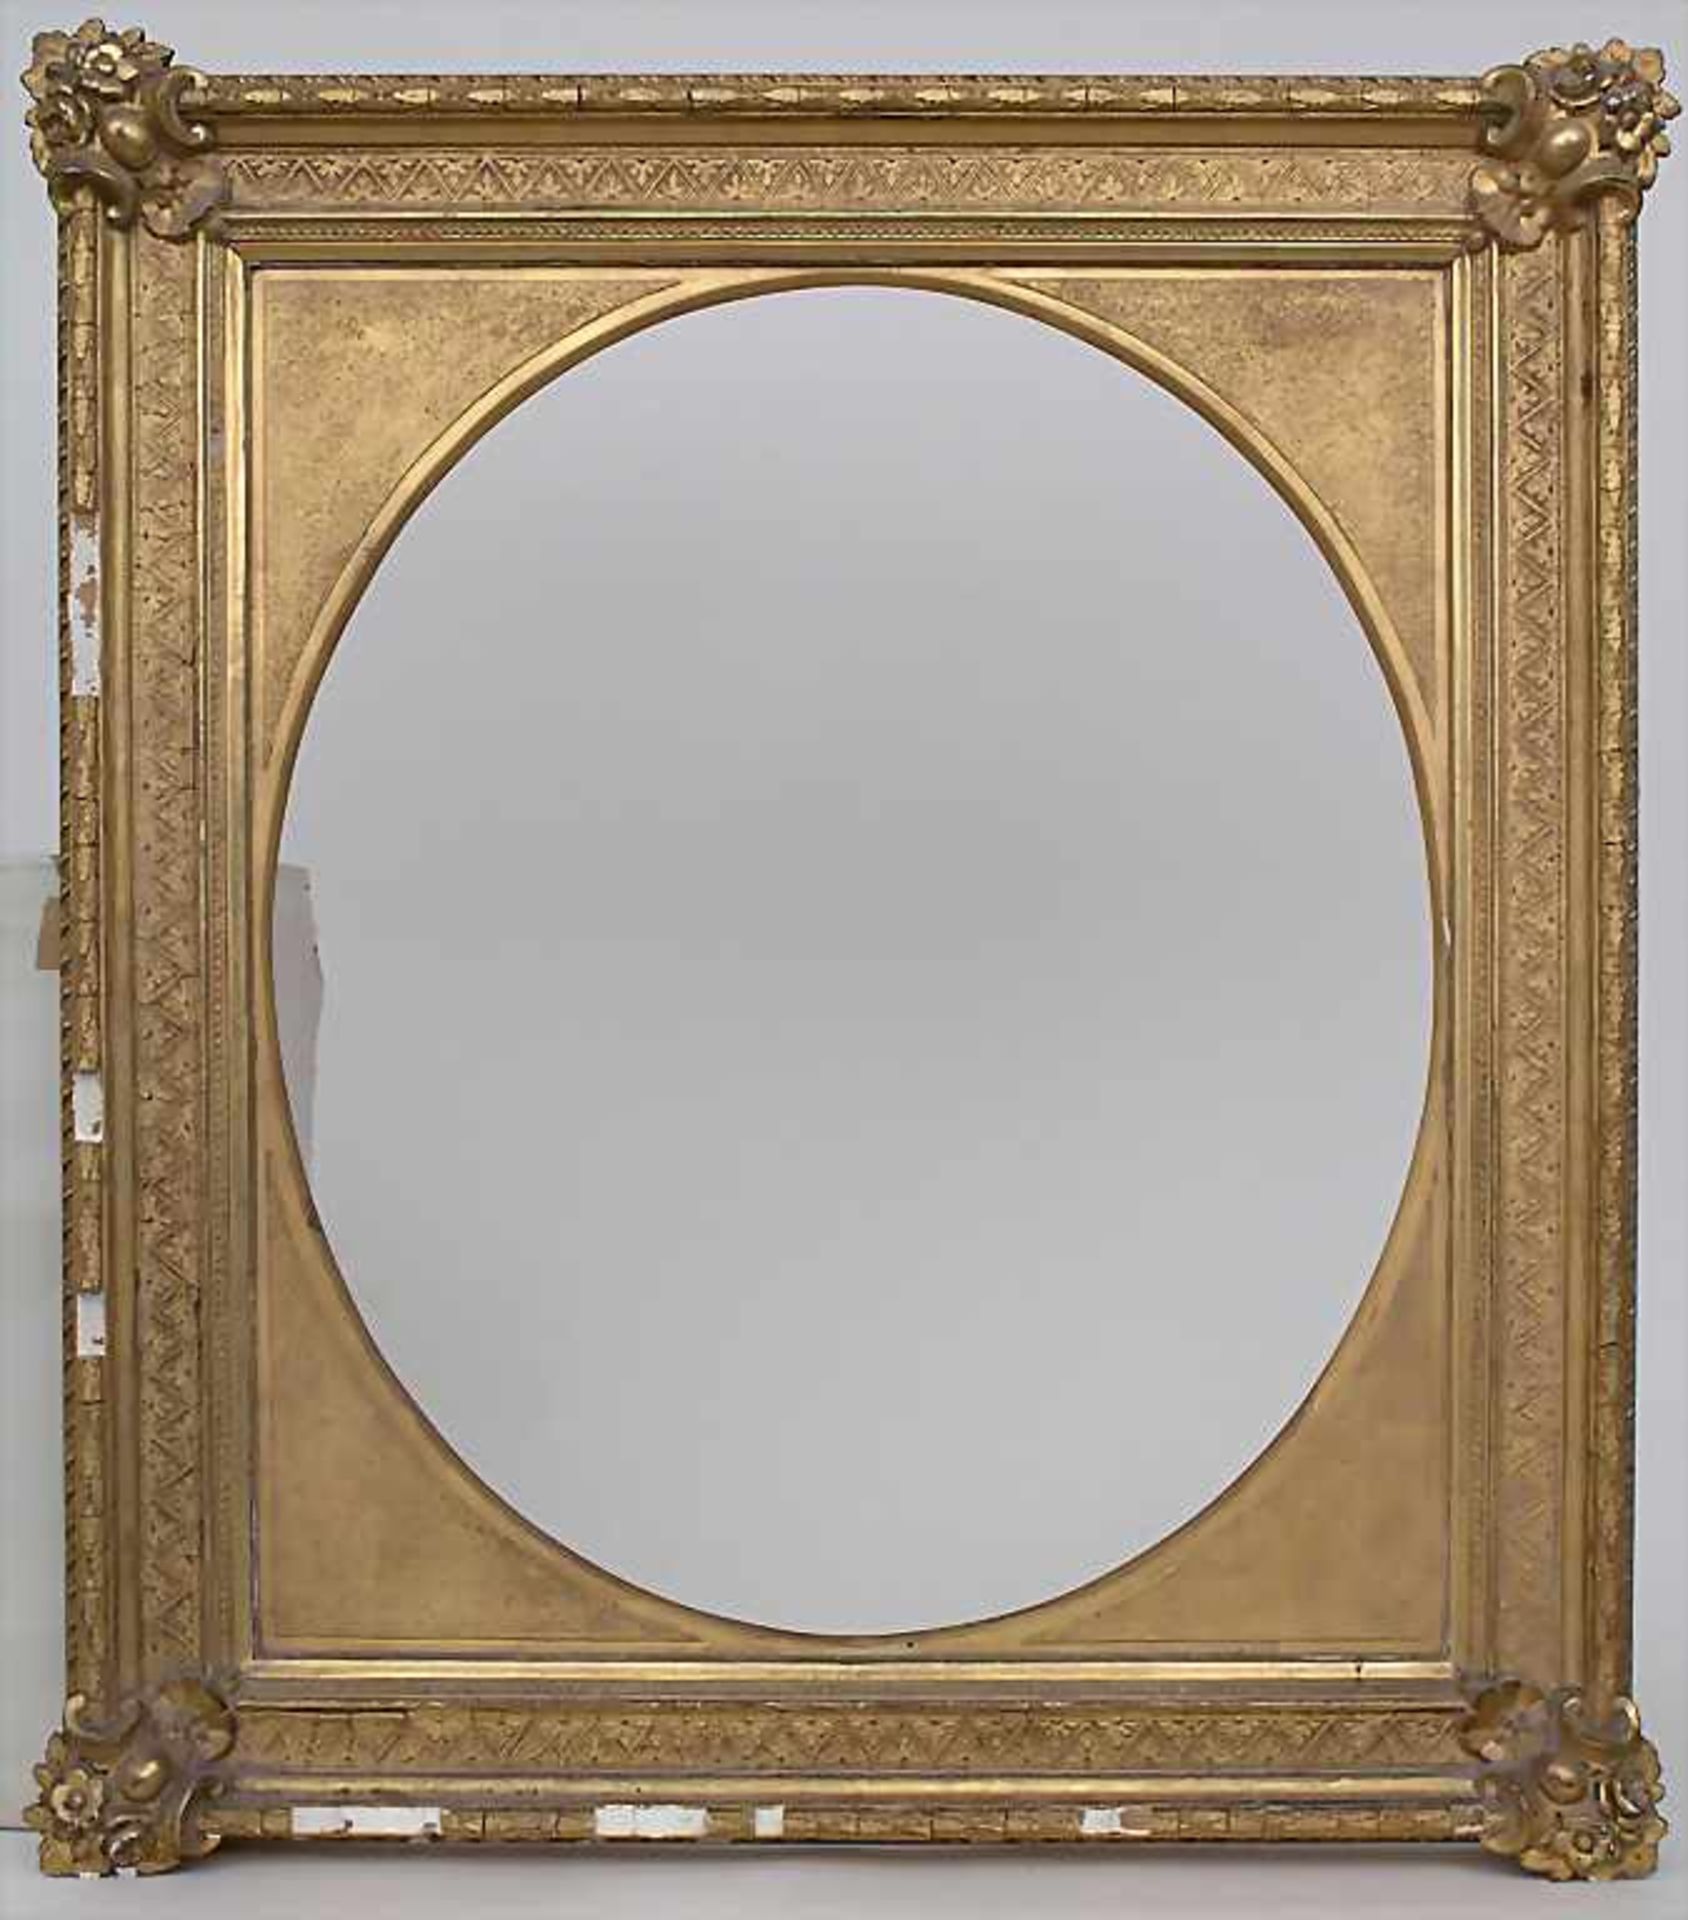 Klassizistischer Rahmen / A classicist frame, Anfang 19. Jh.